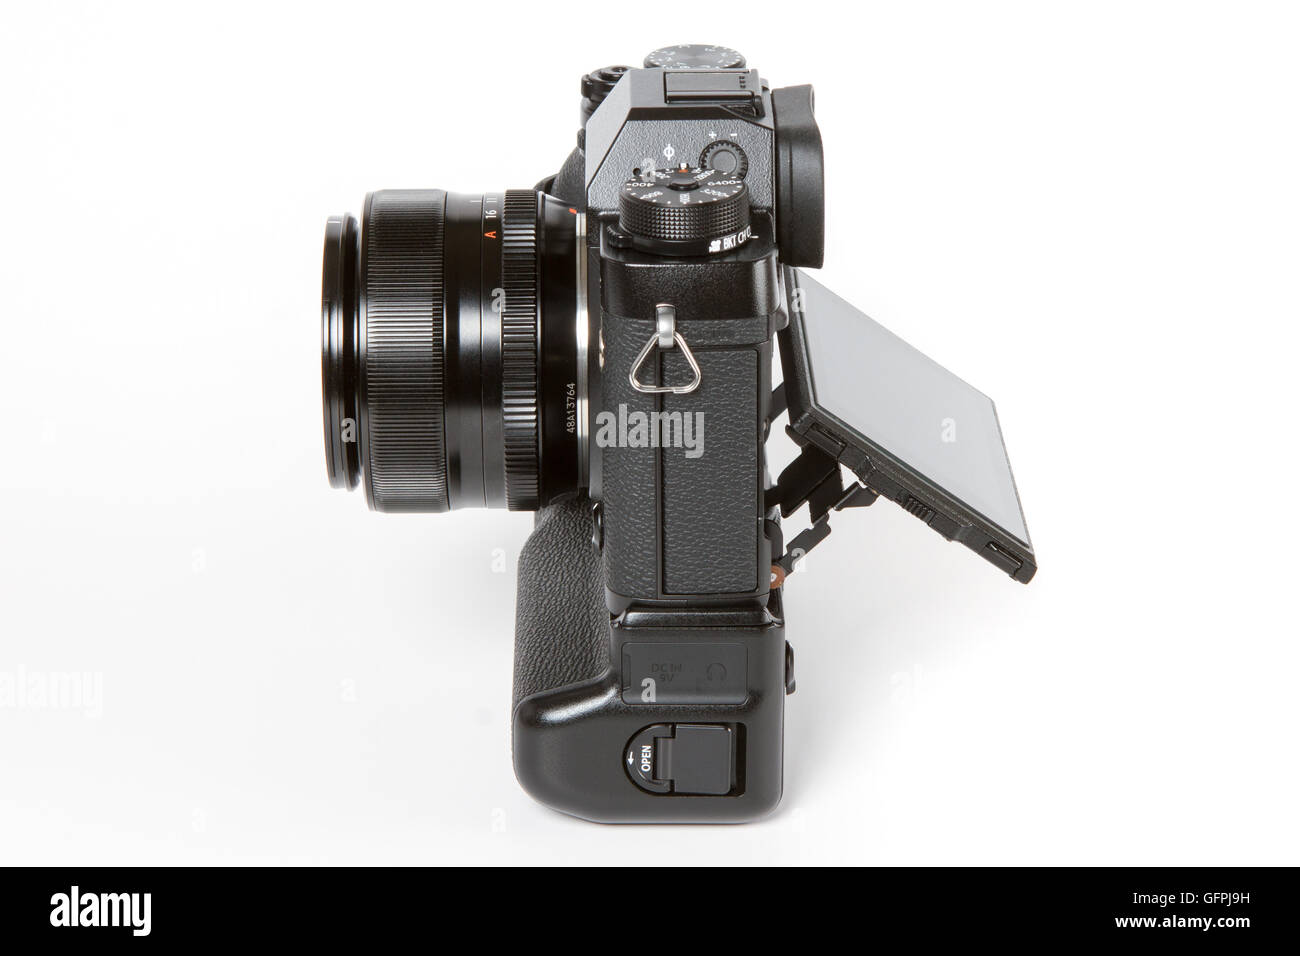 FUJIFILM X-T2, 24 mégapixels, caméra vidéo 4K mirrorless avec une batterie additionnelle poignée et avec écran arrière incliné d'un côté Banque D'Images